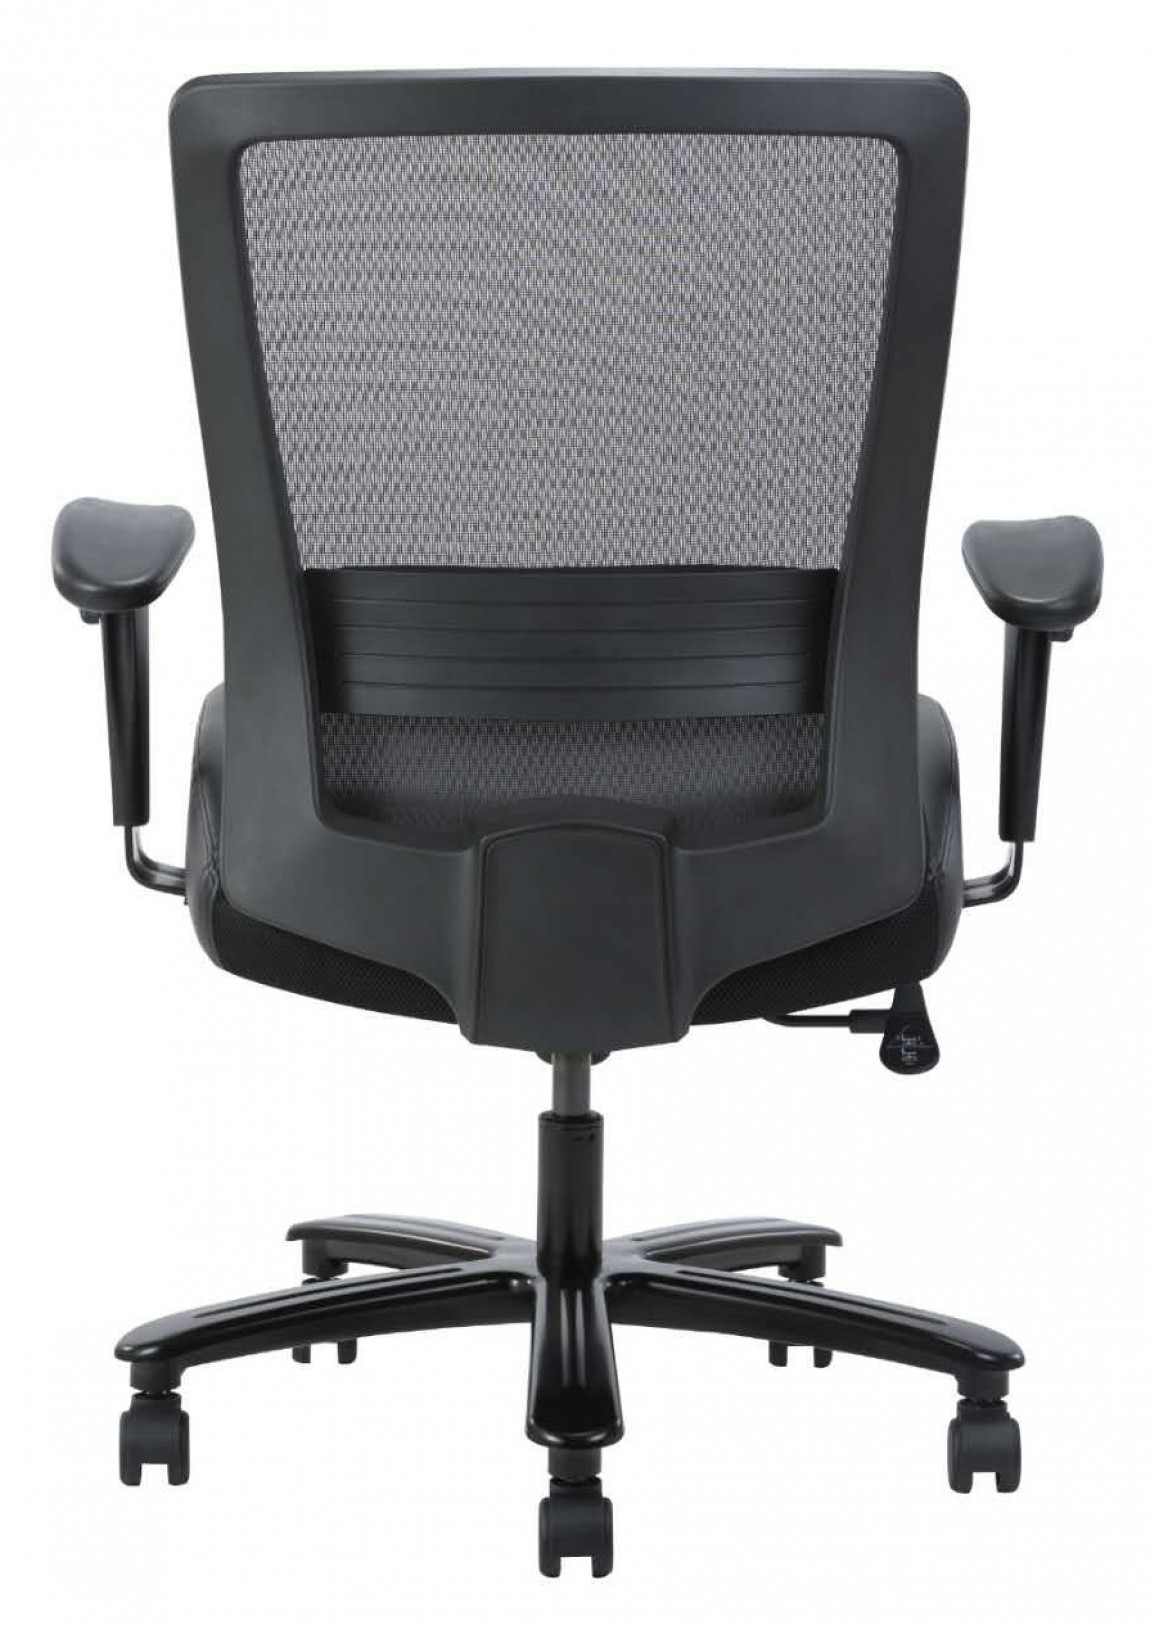 Heavy Duty Mesh Back Office Chair